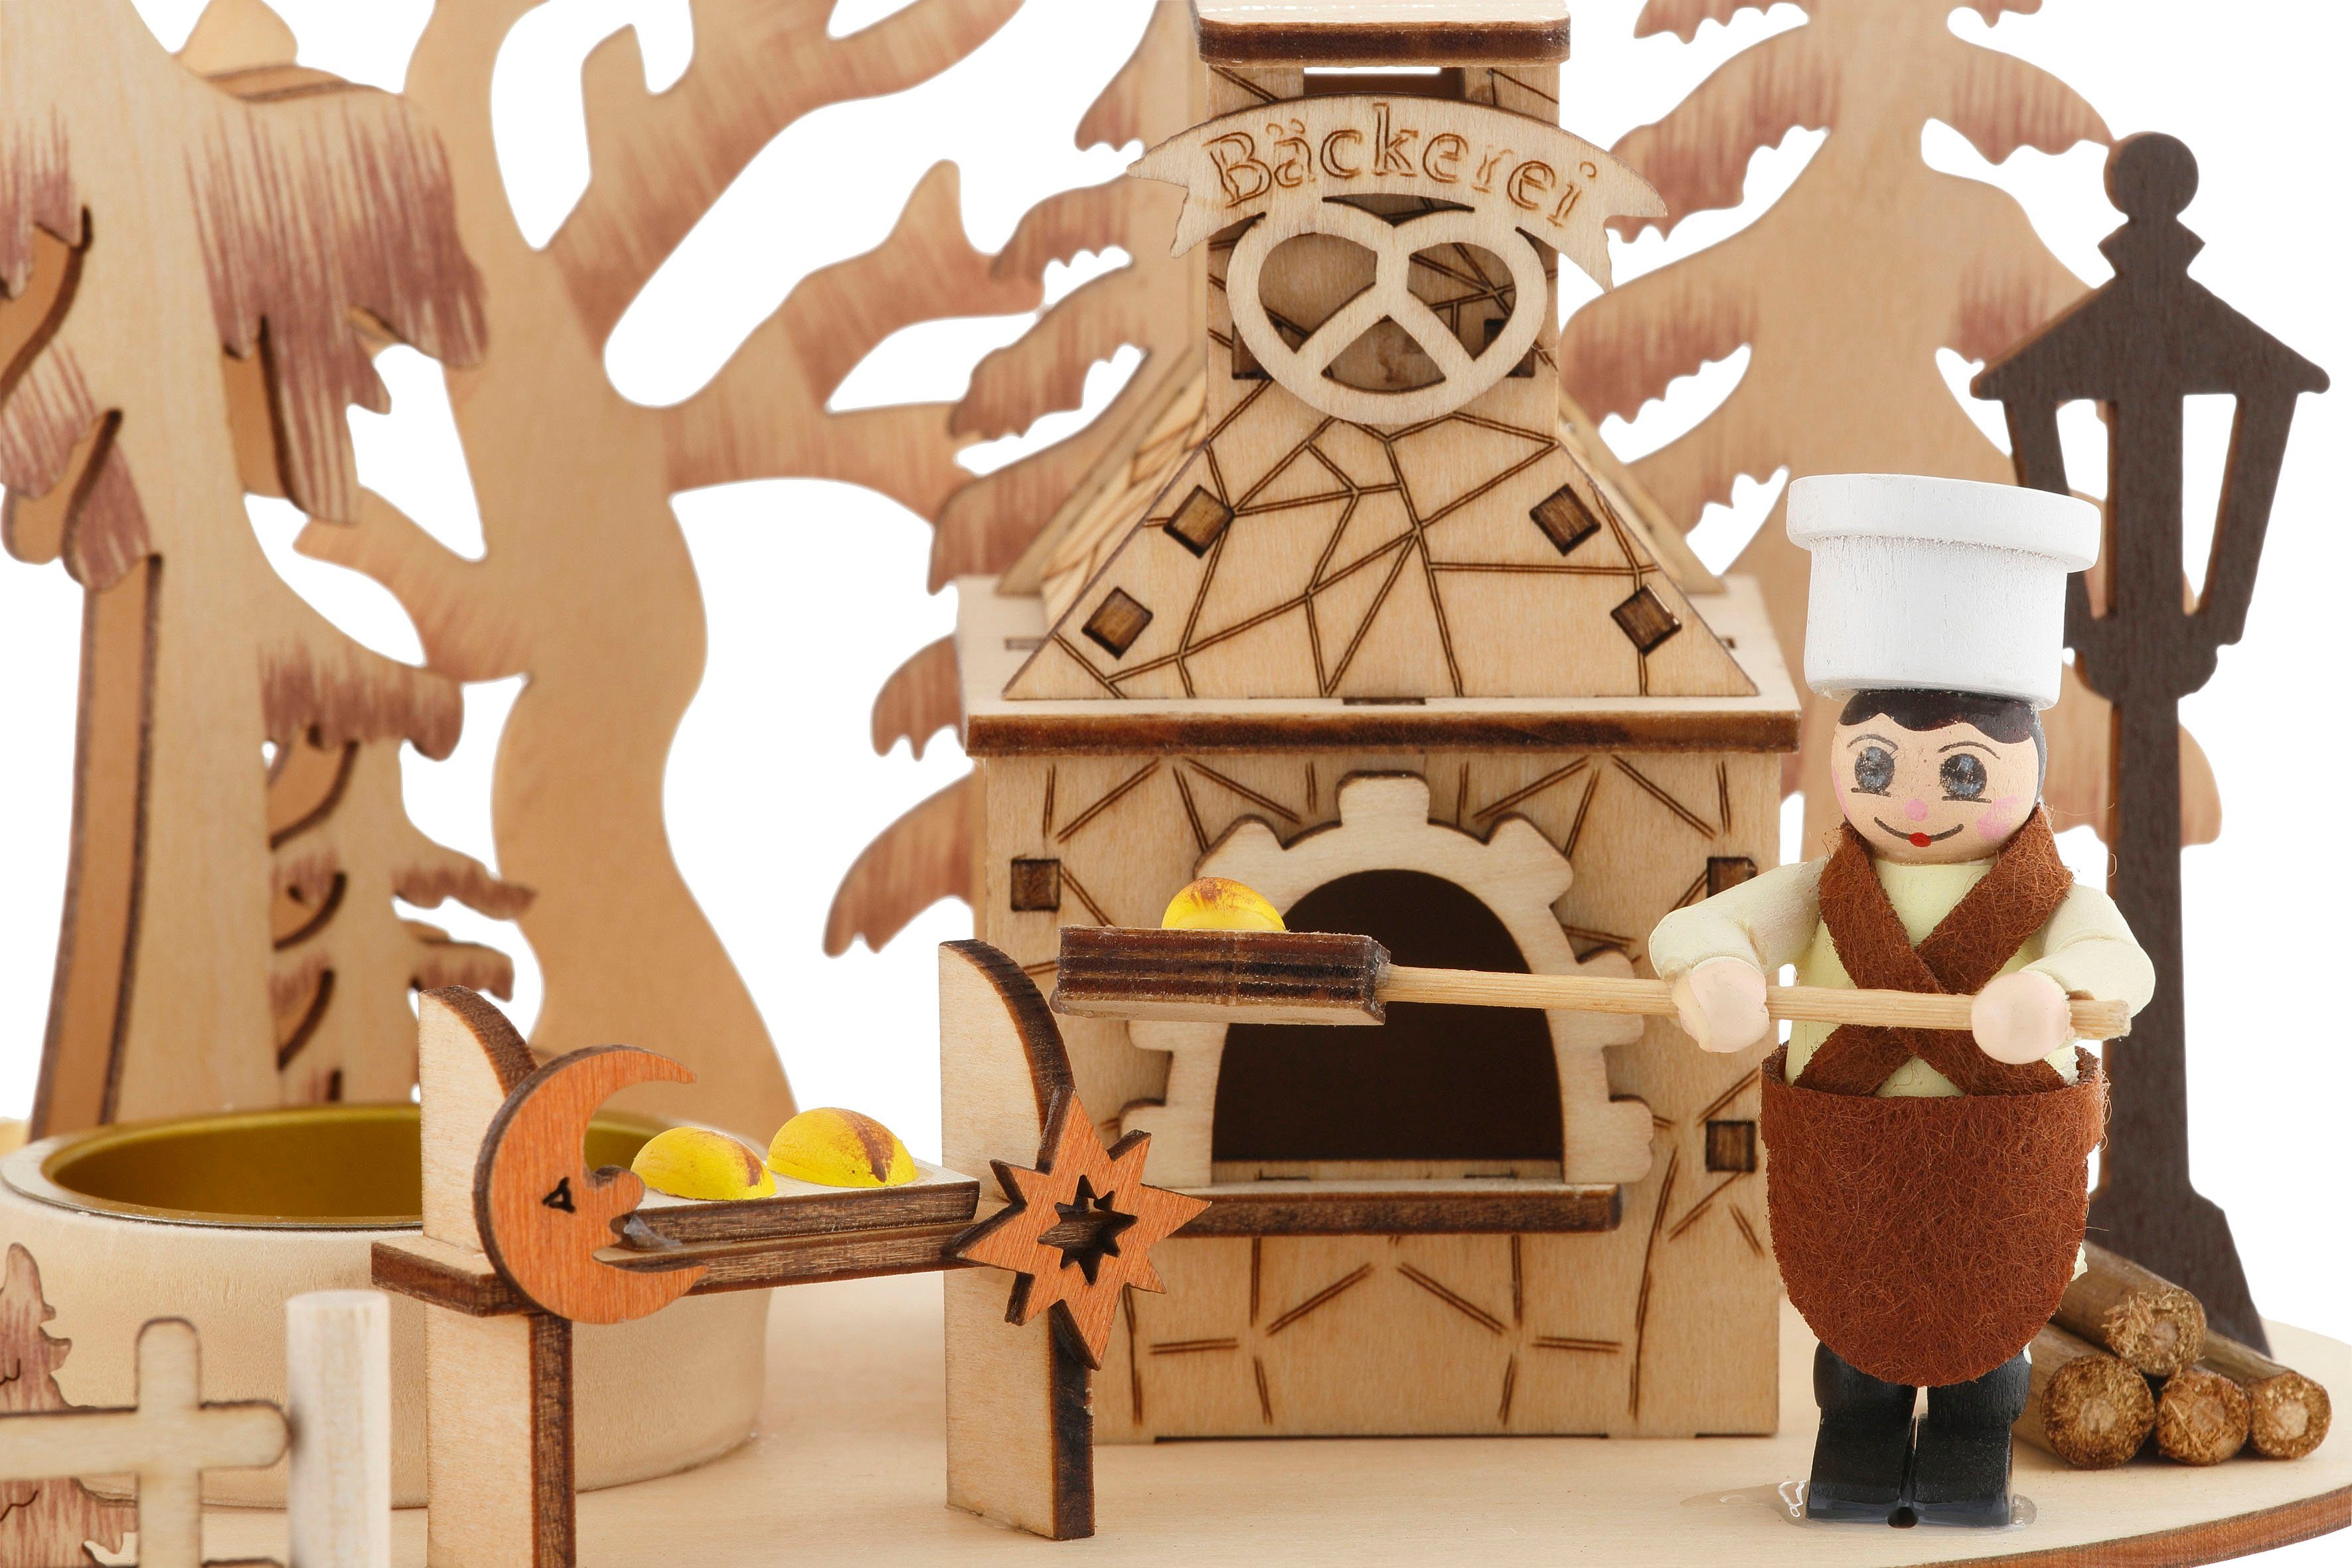 Home affaire Weihnachtspyramide Bäckerei, Weihnachtsdeko, Teelichtpyramide Höhe mit Räucherofen, 23 cm ca